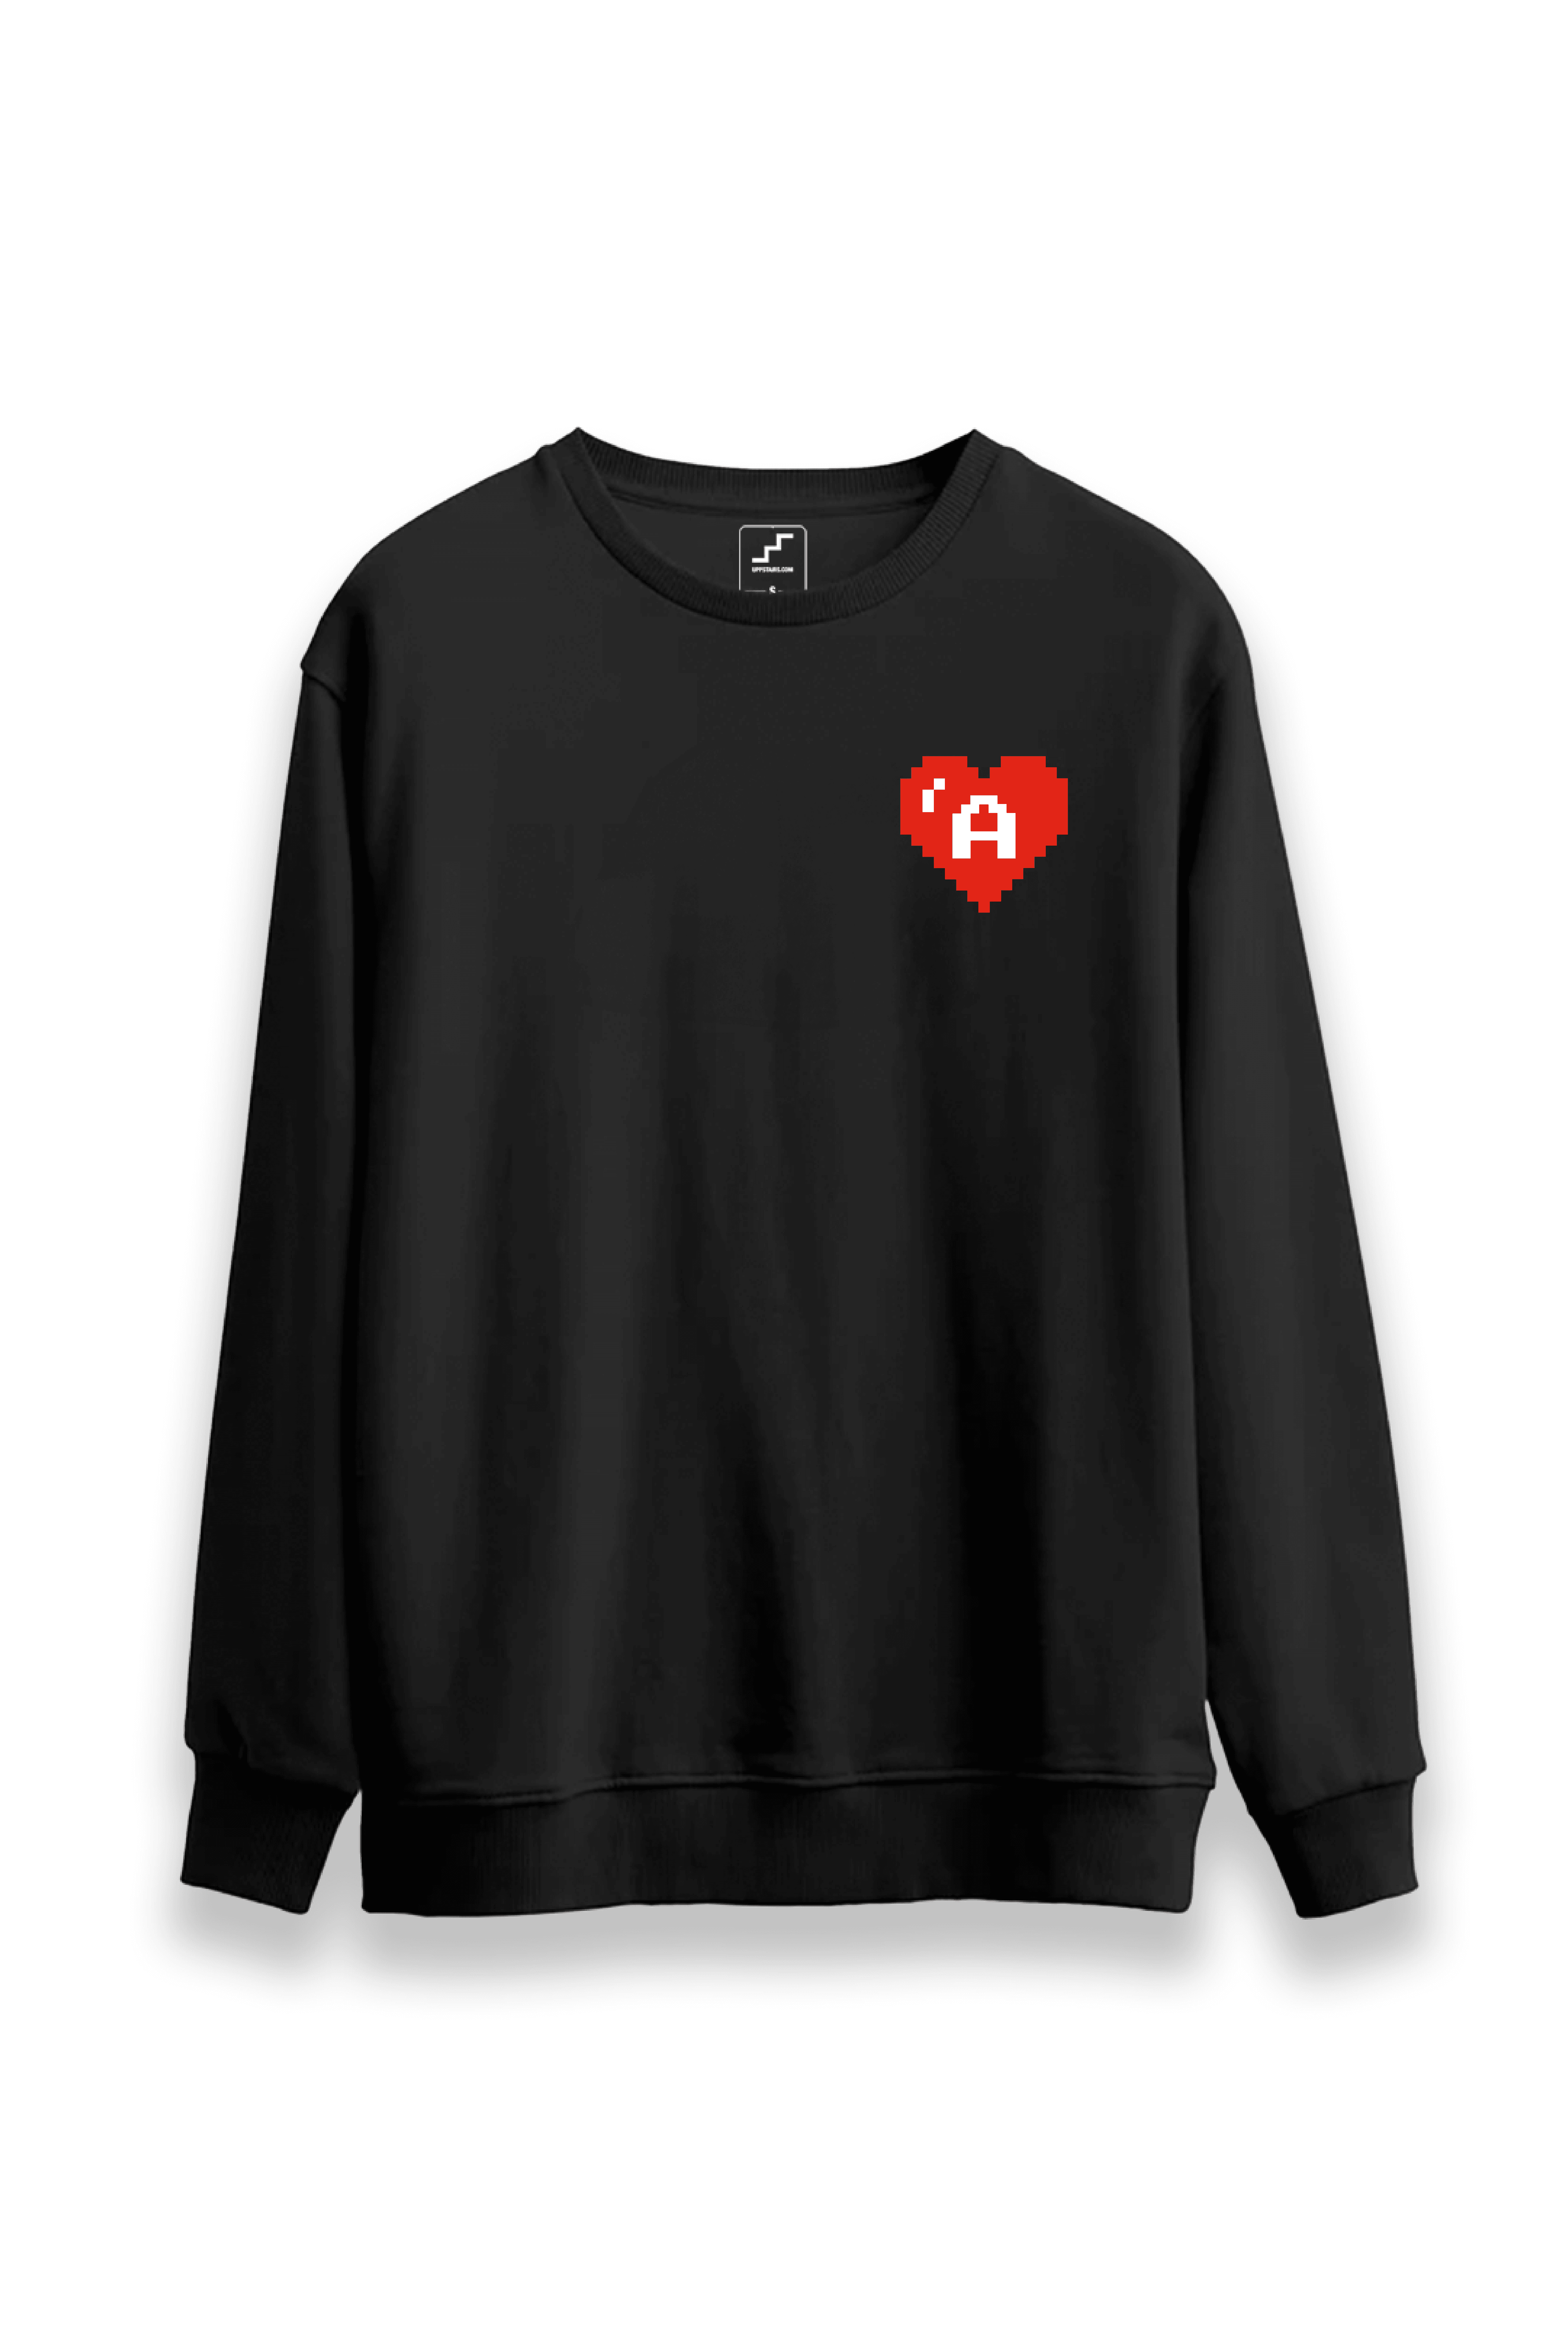 Aşkın Piksel Kalbi - Sevgiler Günü Özel Sweatshirt ❤️ - Siyah